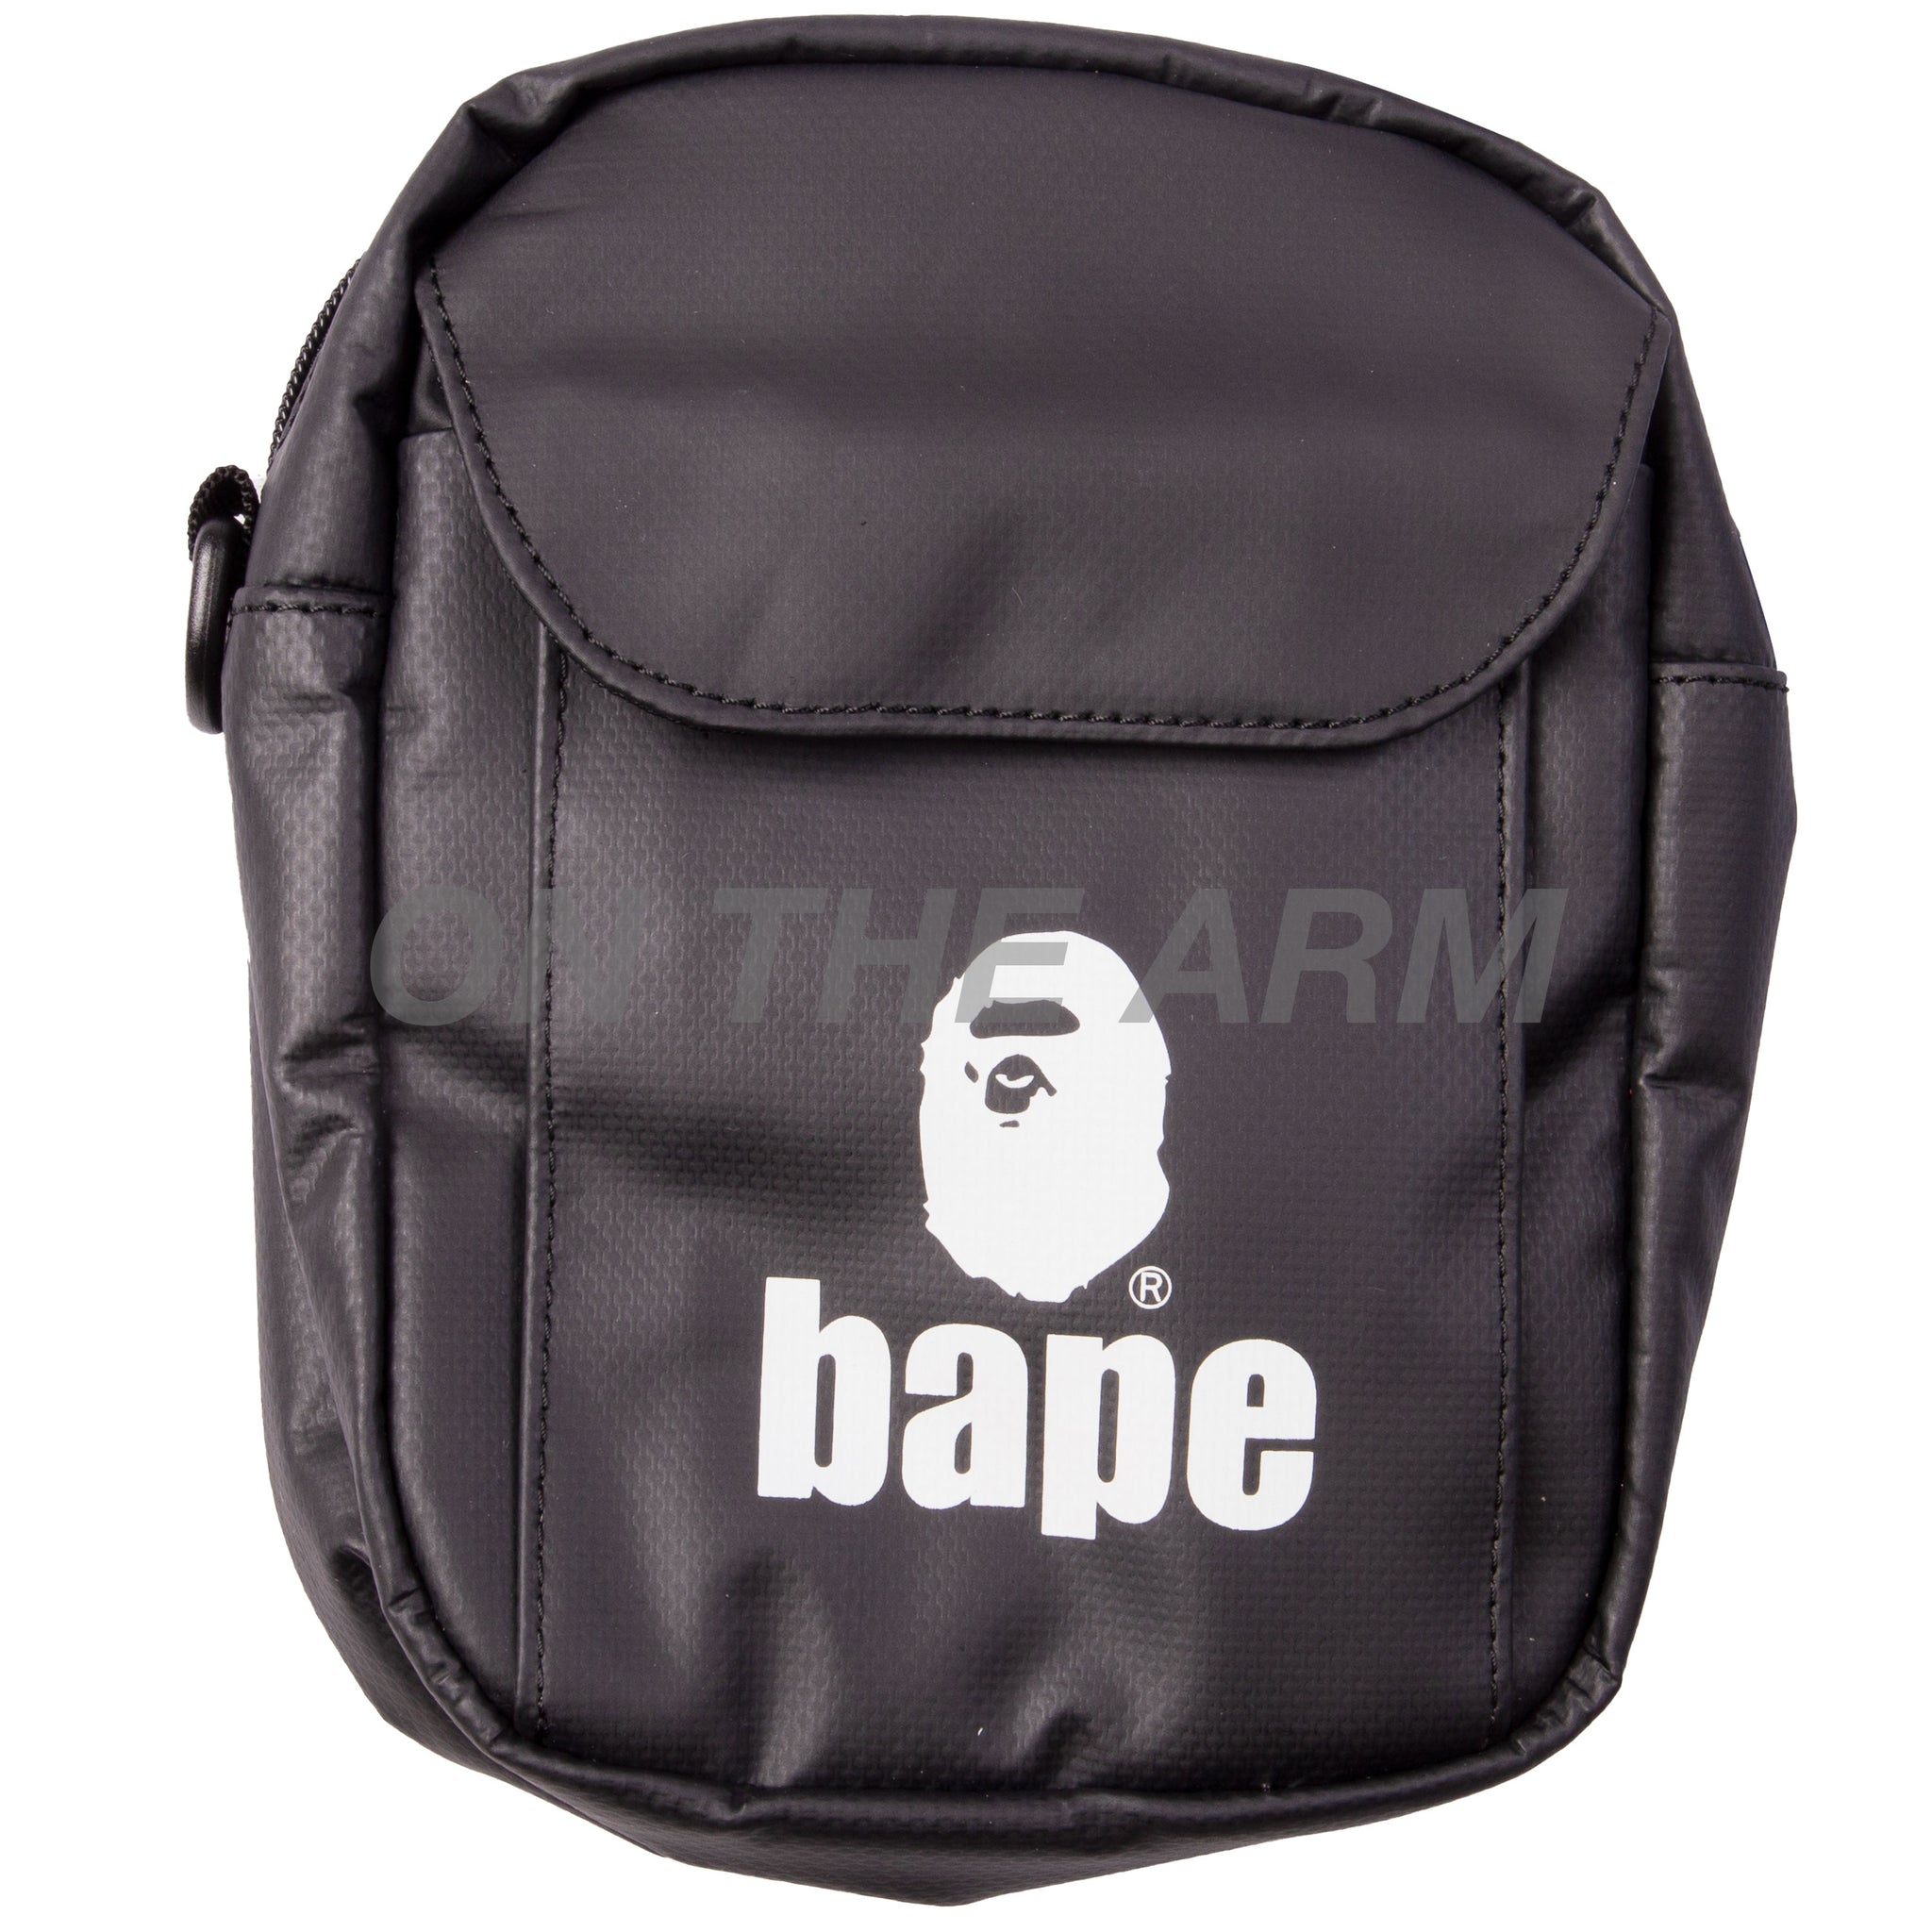 Bape Black Shoulder Bag